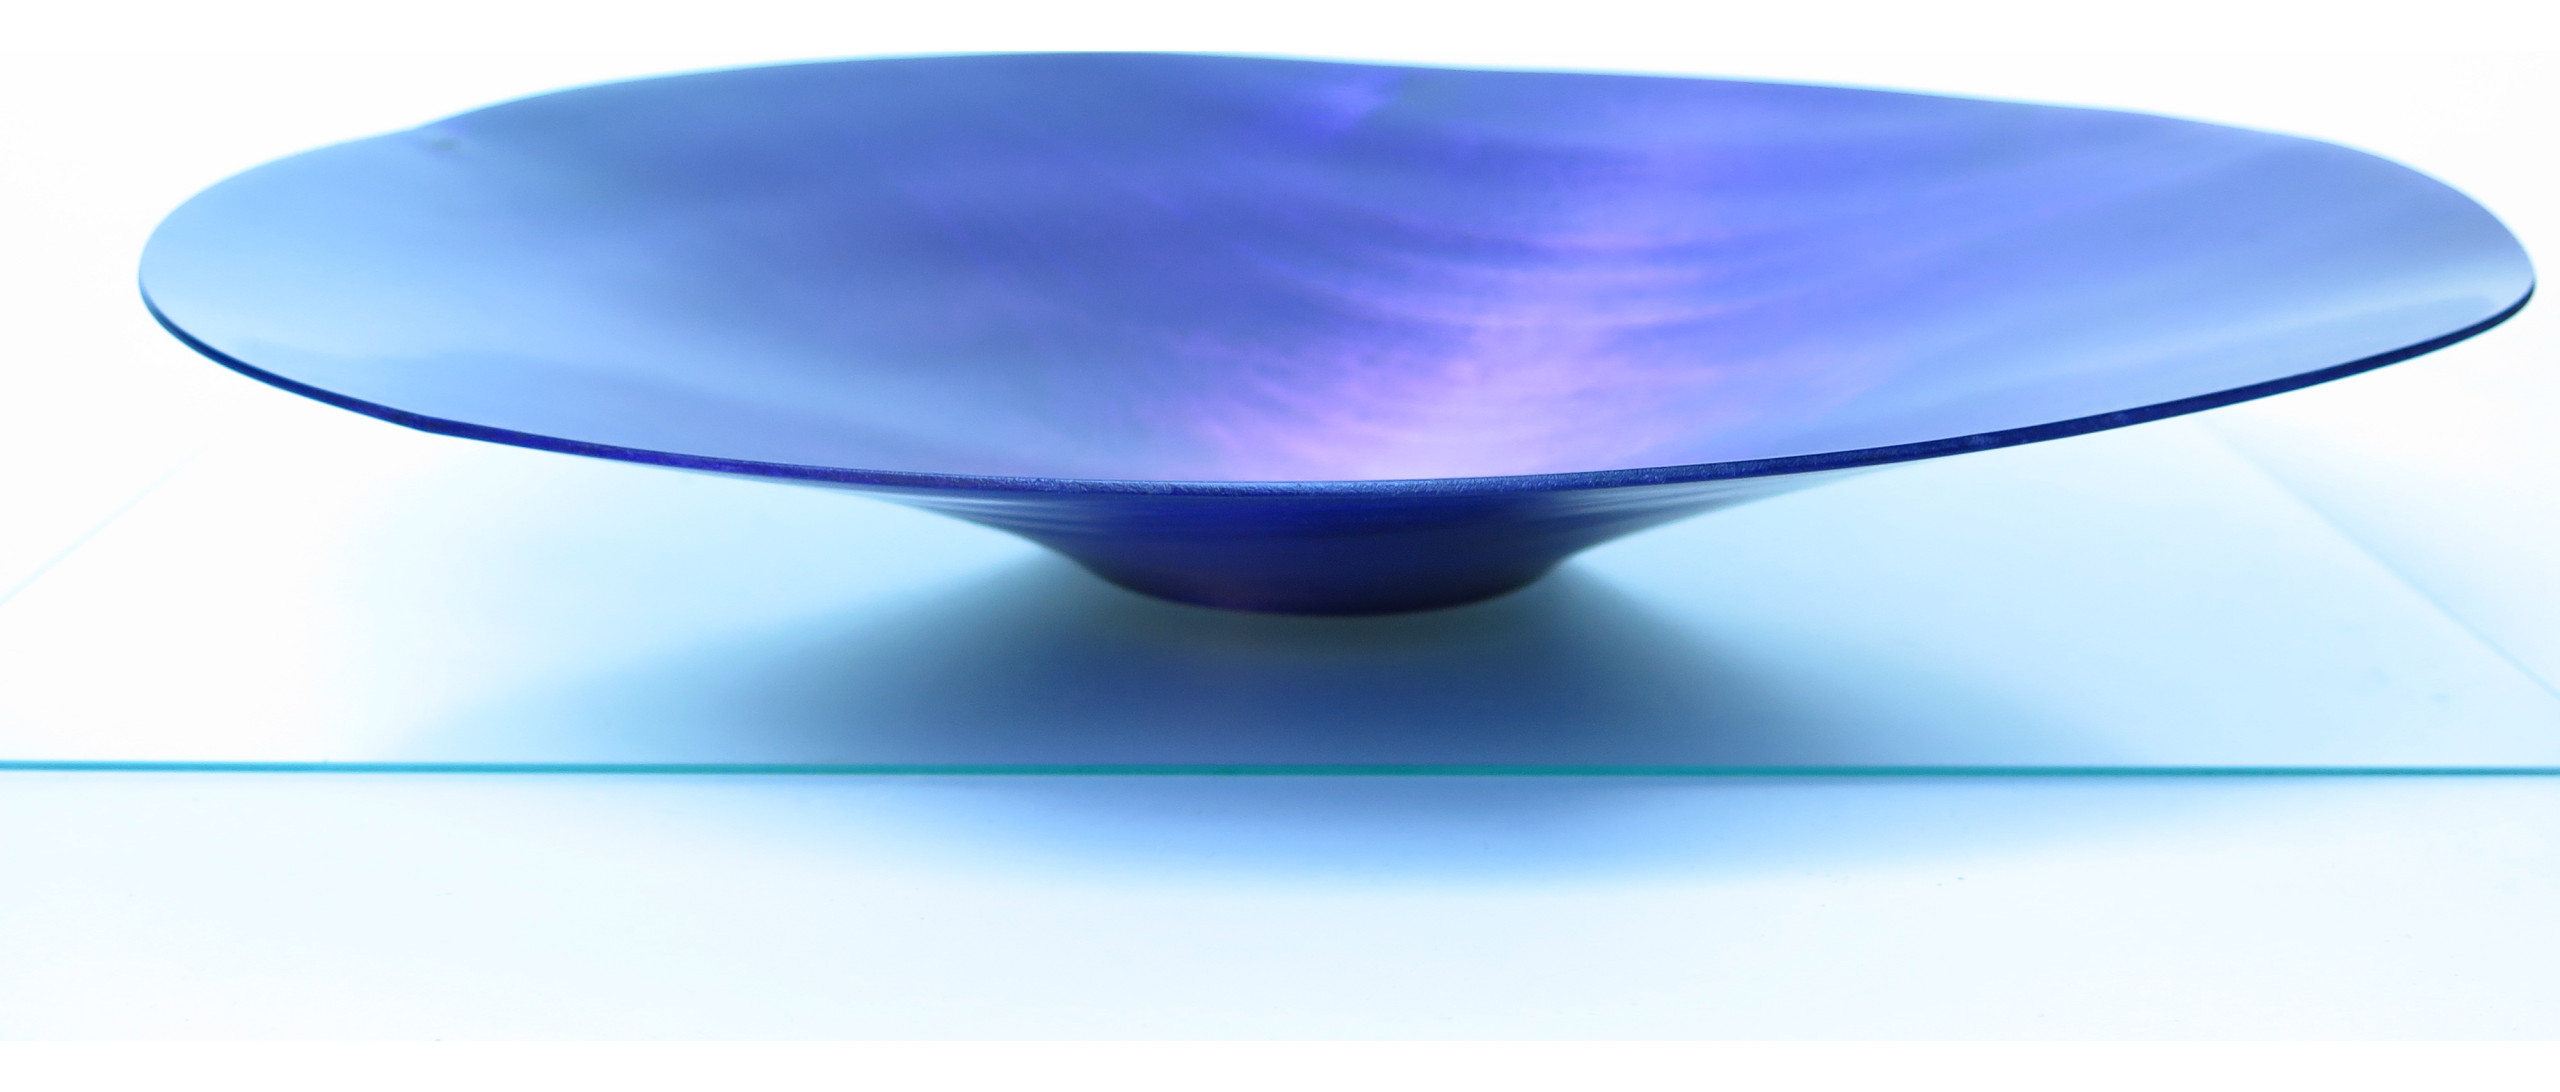 Schale blau innen Hochglanzlack, aussen matt, ø31 cm, h 4 cm,    Preis: 460€